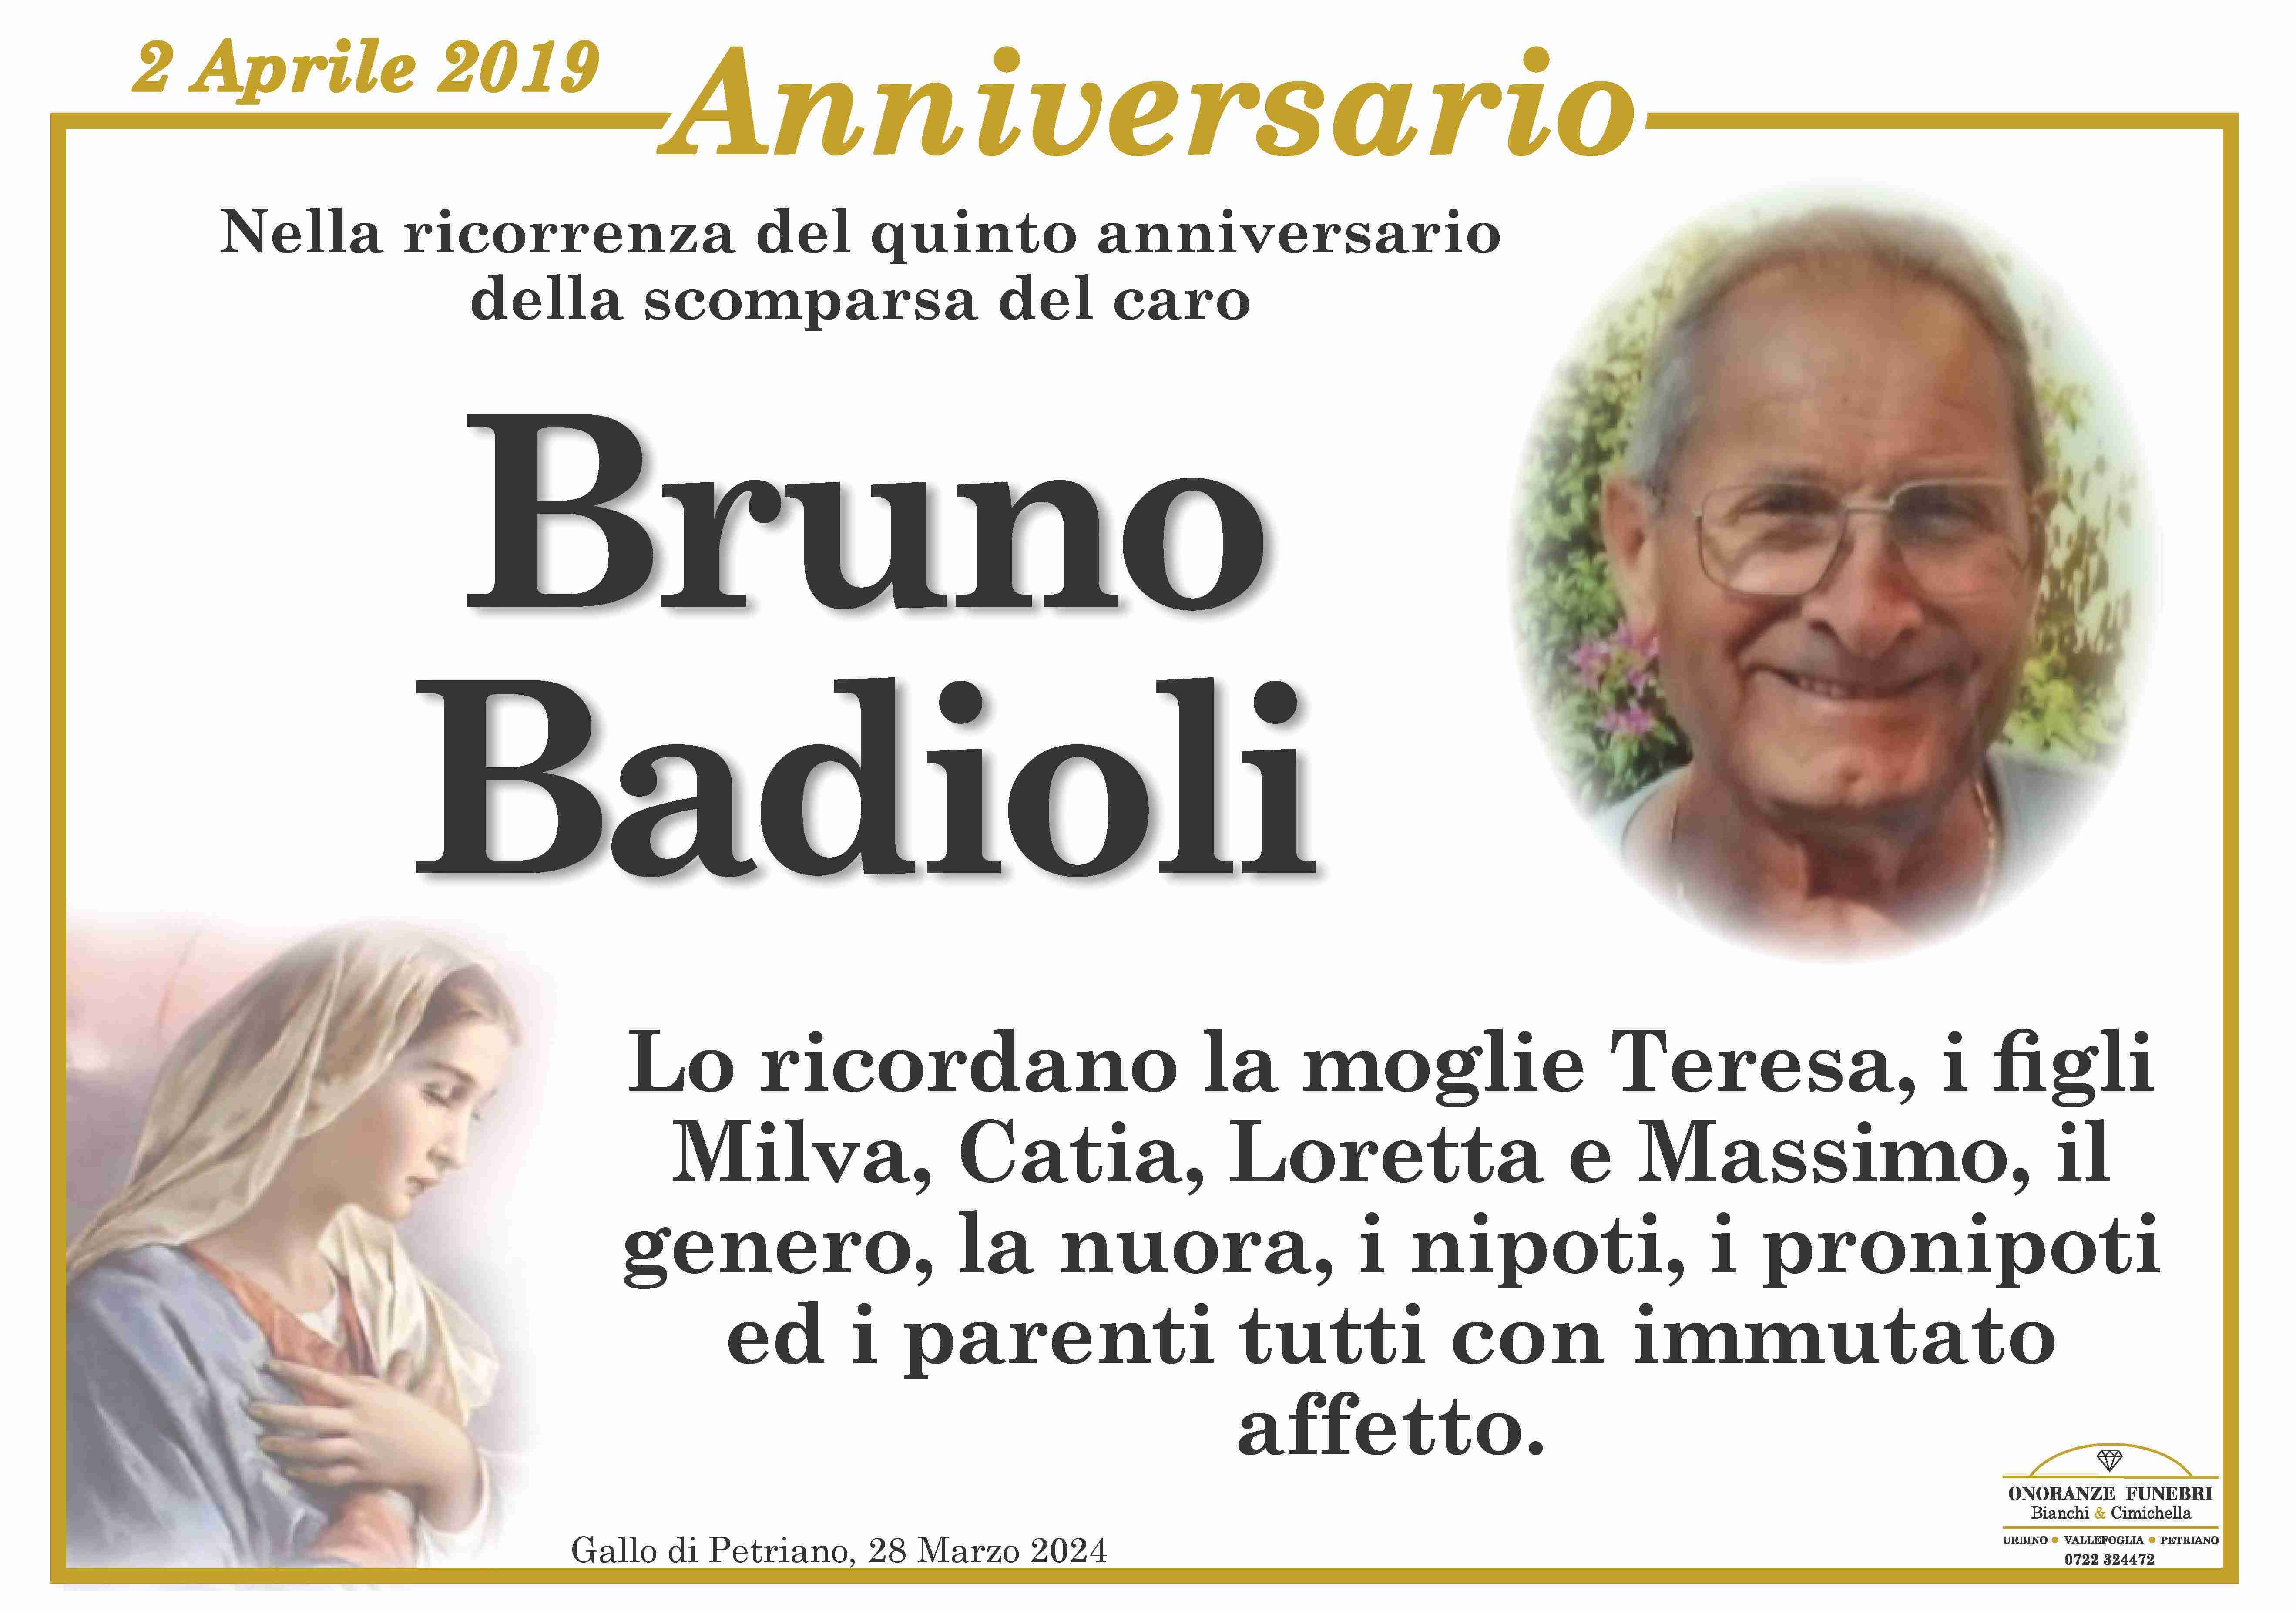 Bruno Badioli